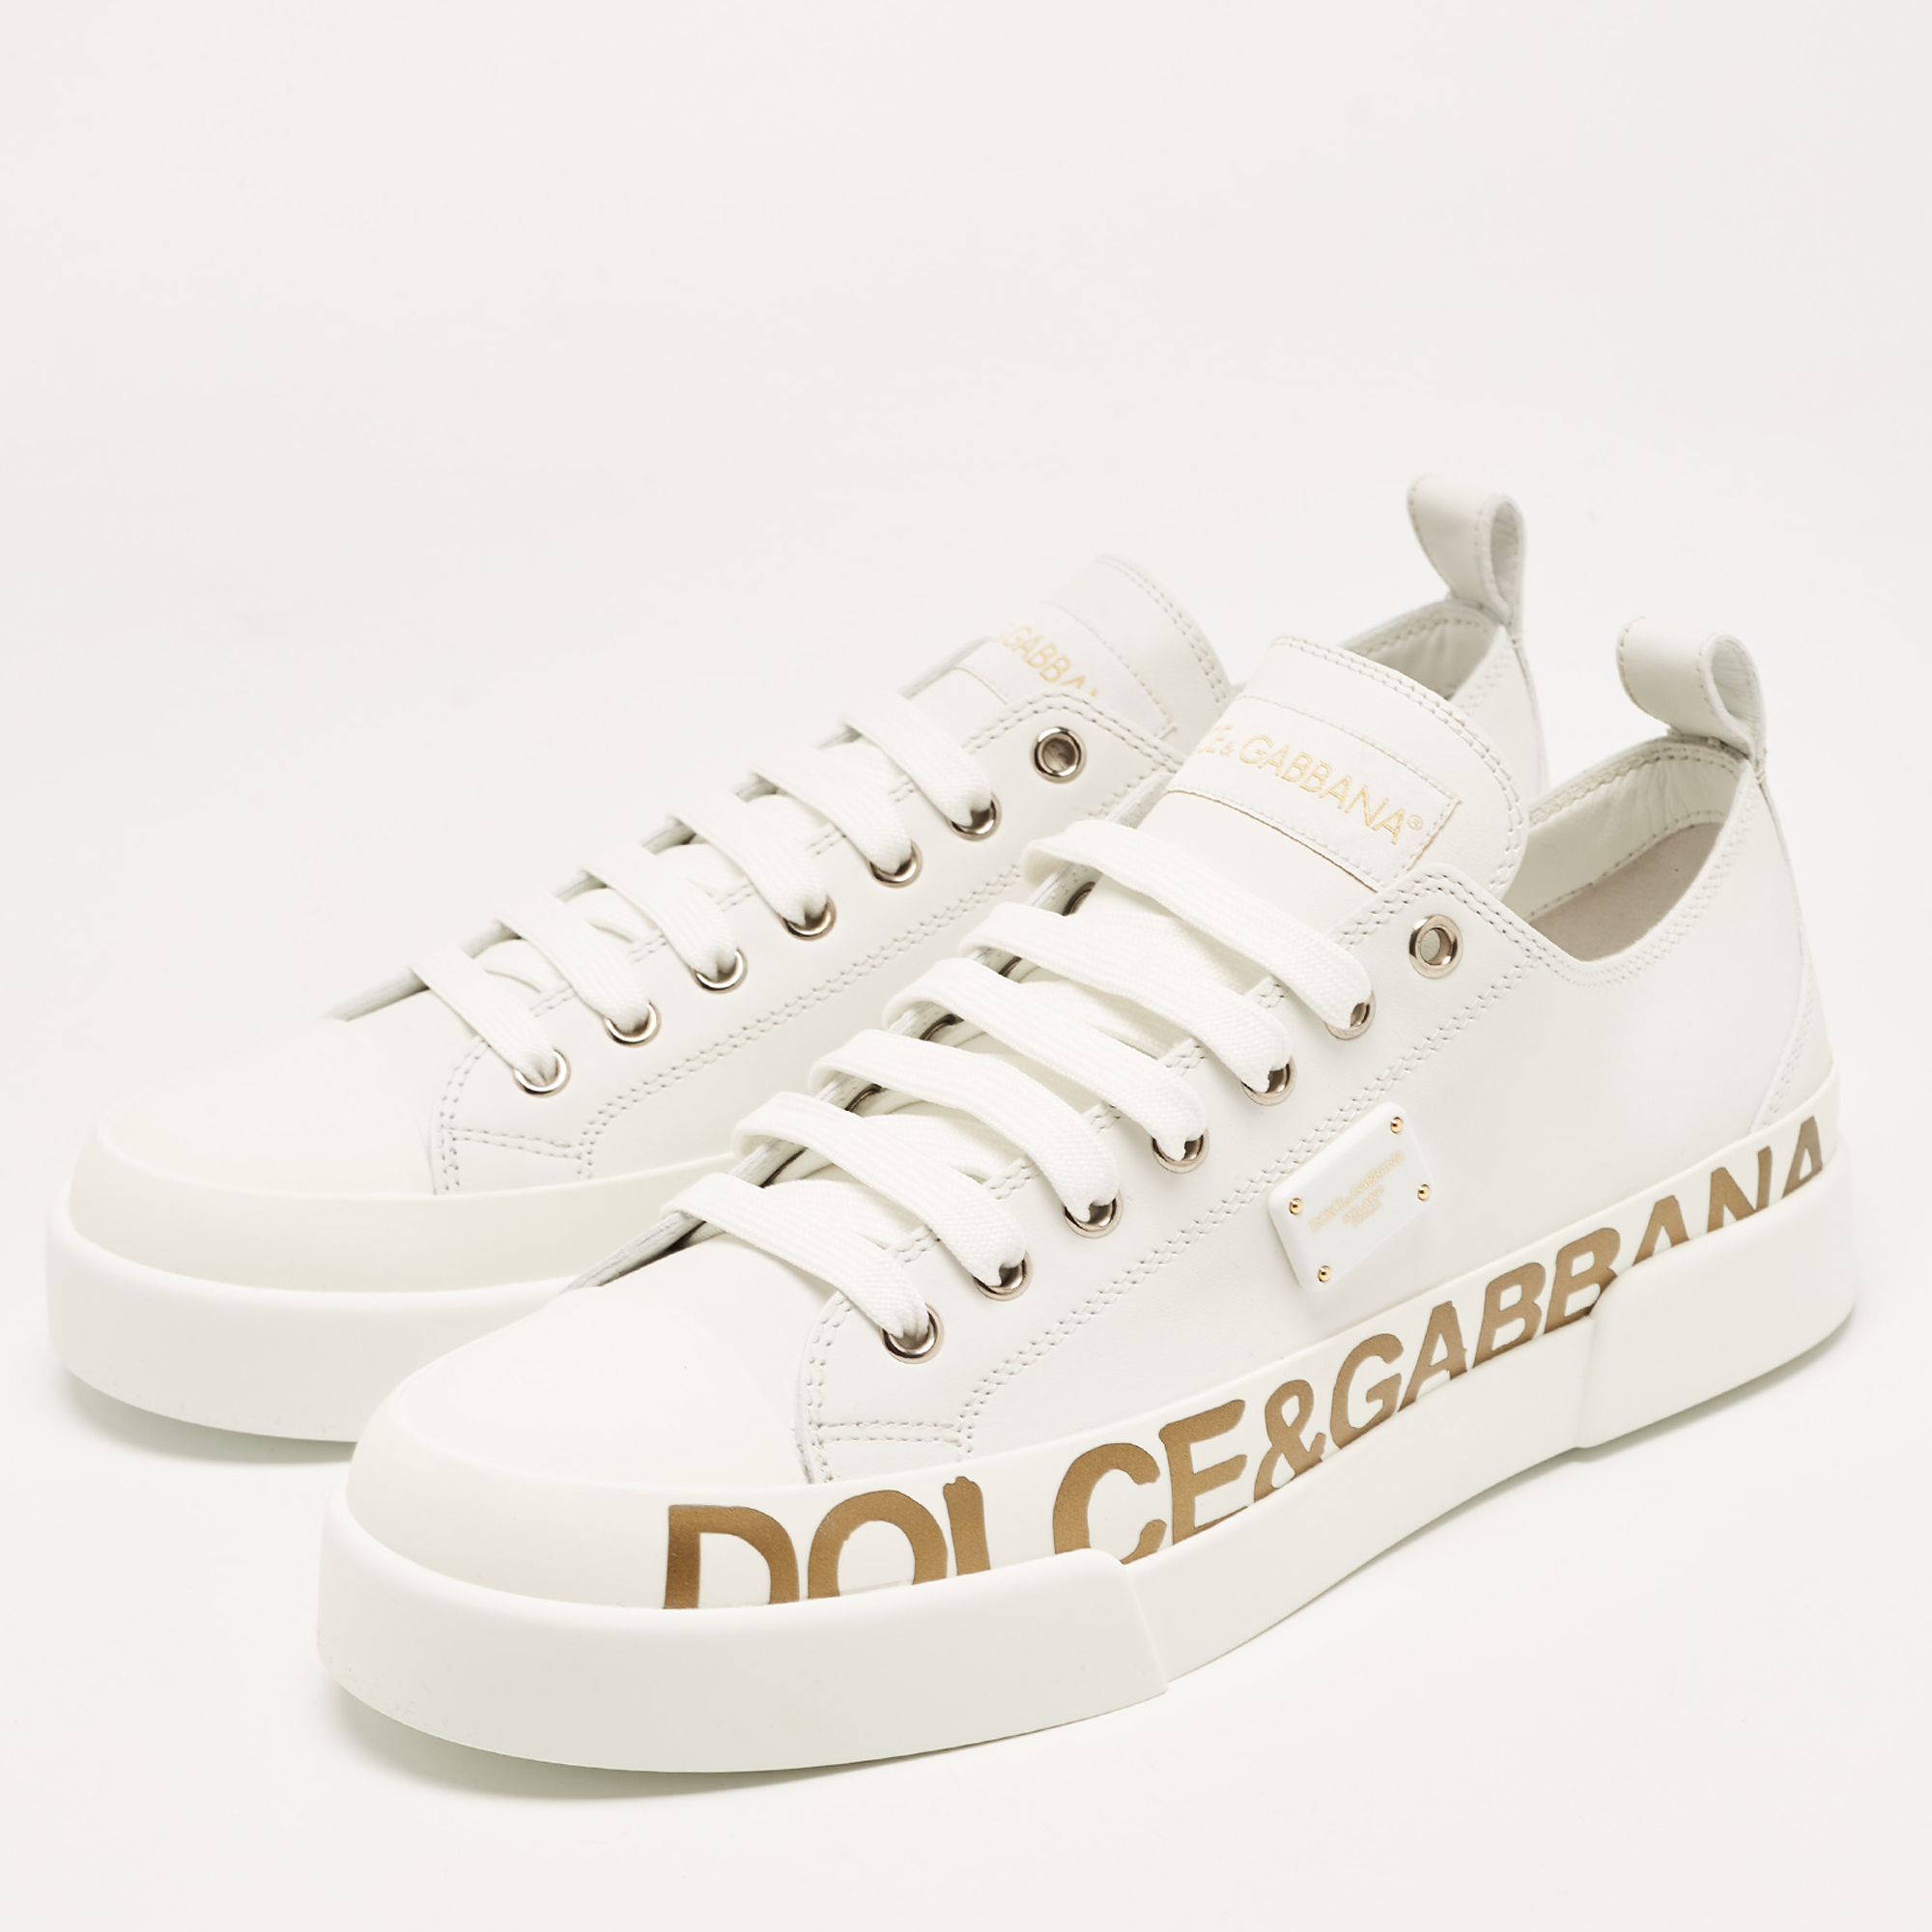 

Dolce & Gabbana White/Gold Leather Portofino Sneakers Size